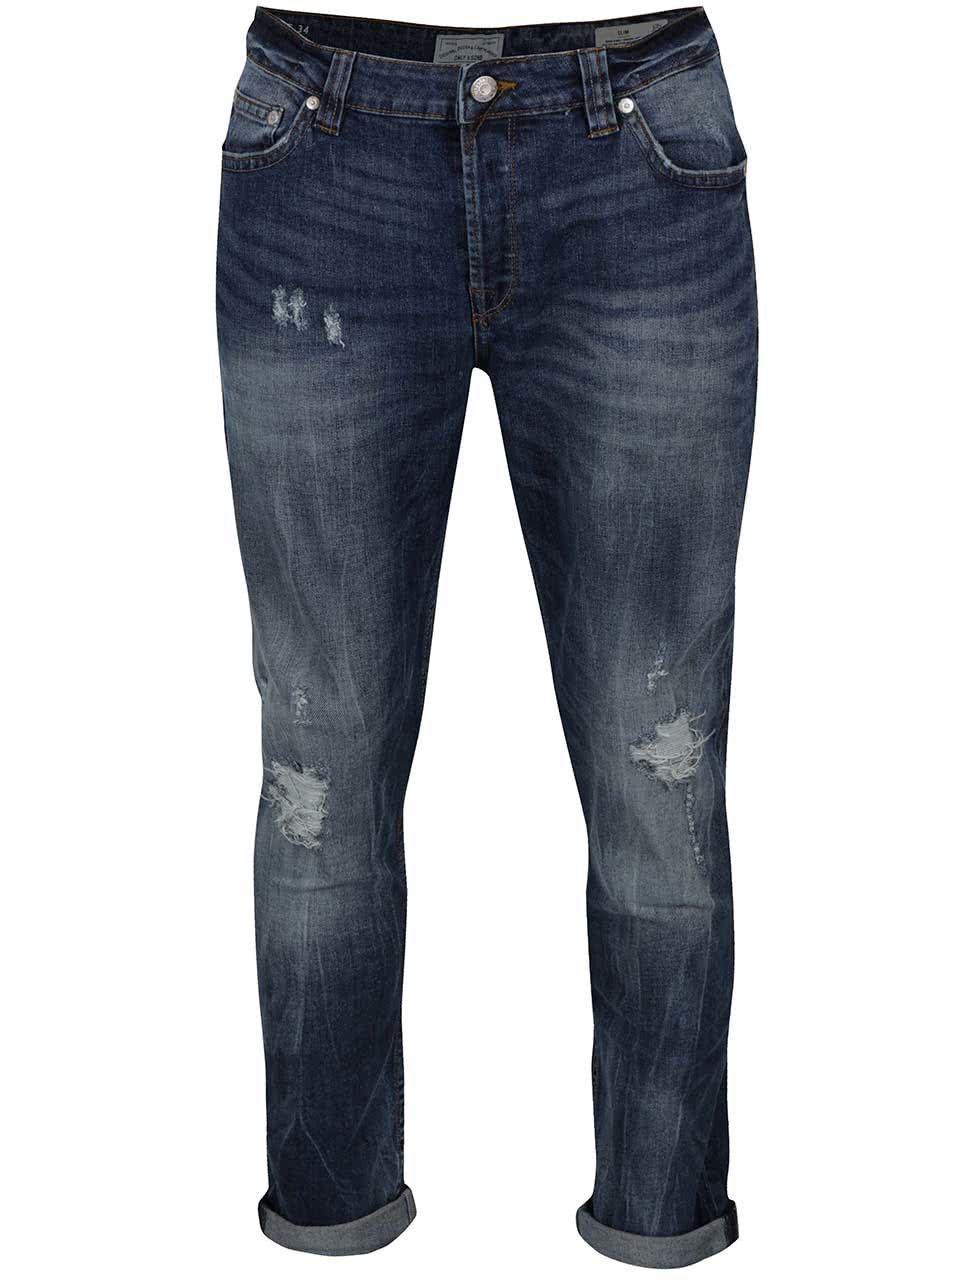 Modré džíny s potrhaným efektem ONLY & SONS Loom